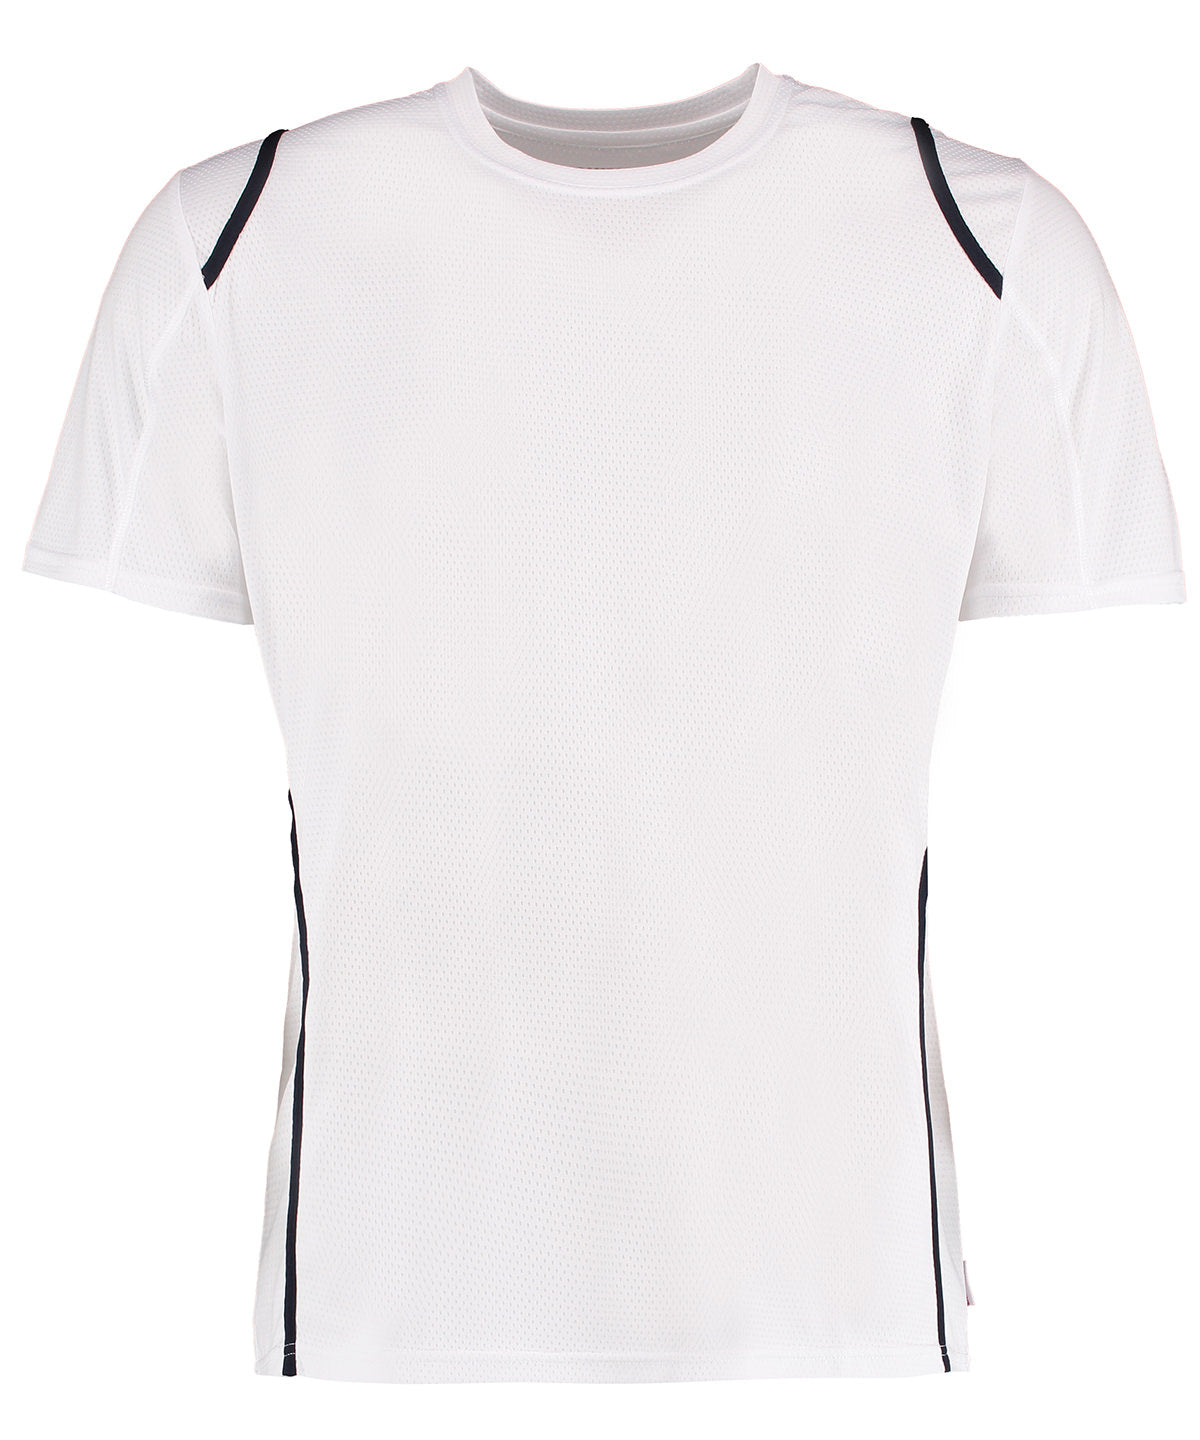 Gamegear® Cooltex® T-shirt Short Sleeve (regular Fit)